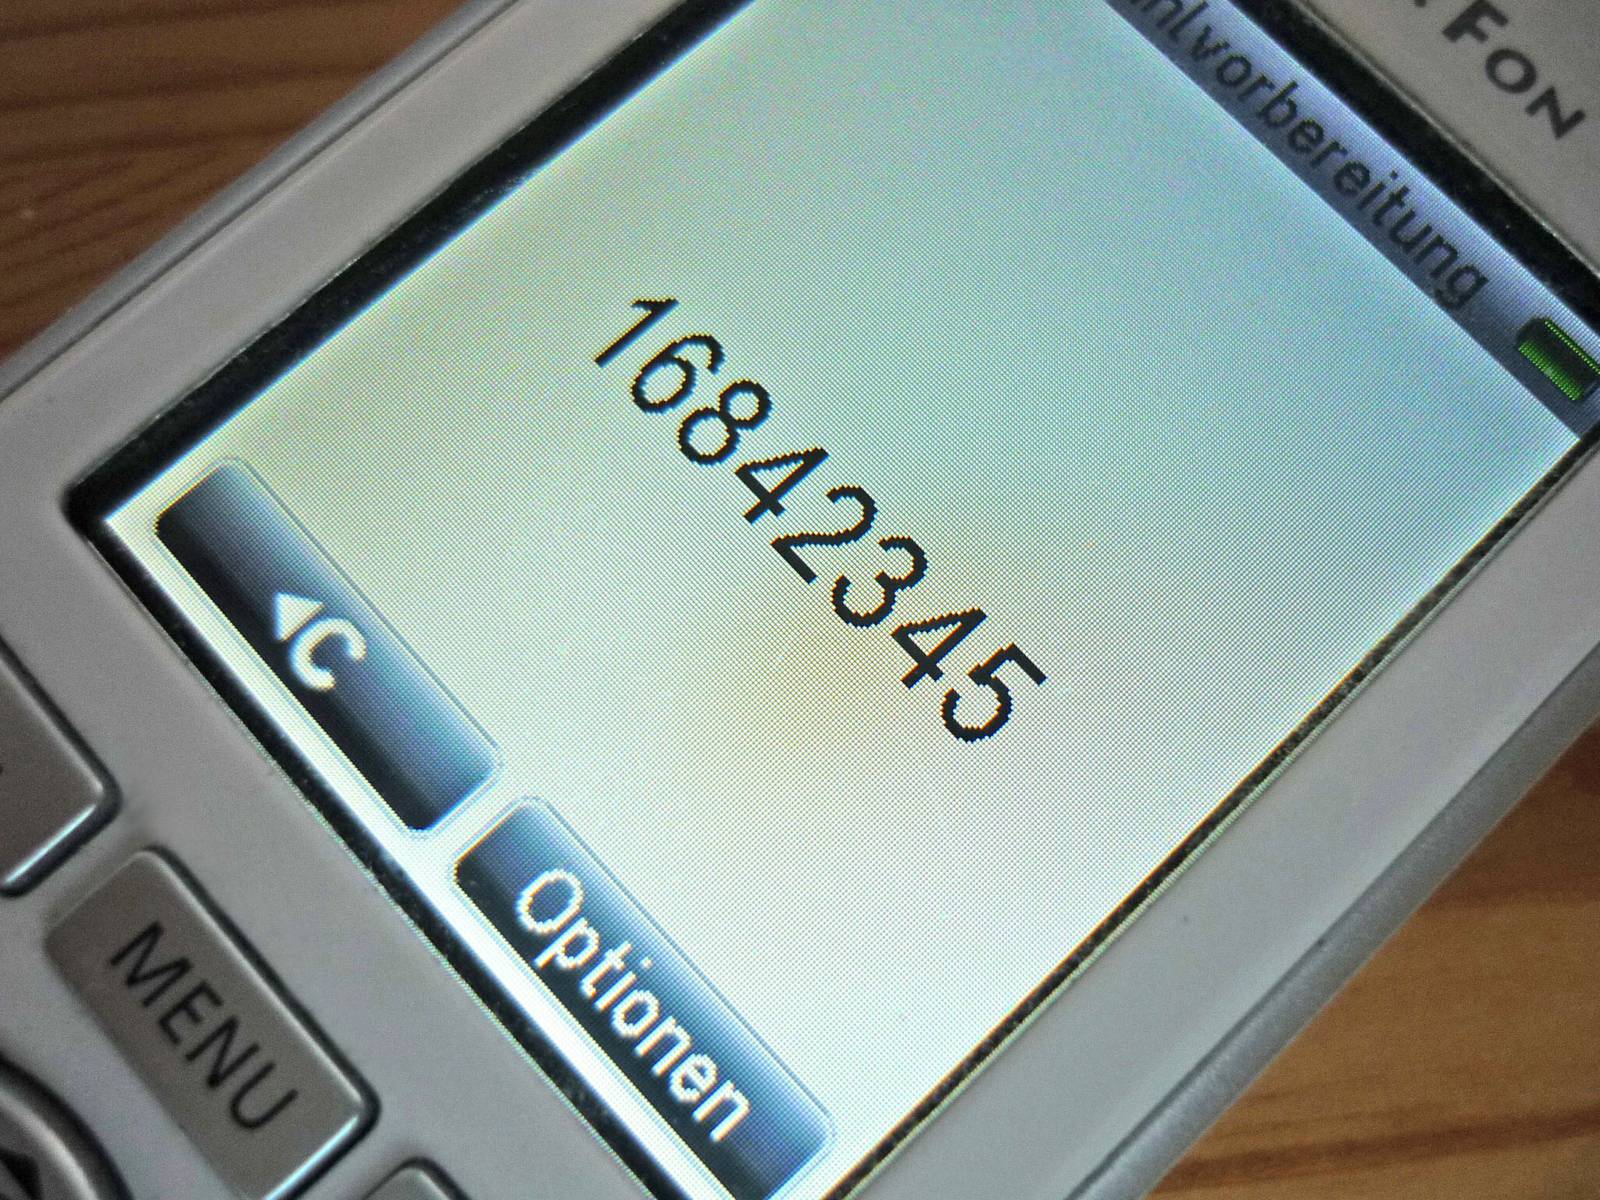 Auf dem Display eines Telefons ist die Nummer 168-42345 zu sehen.